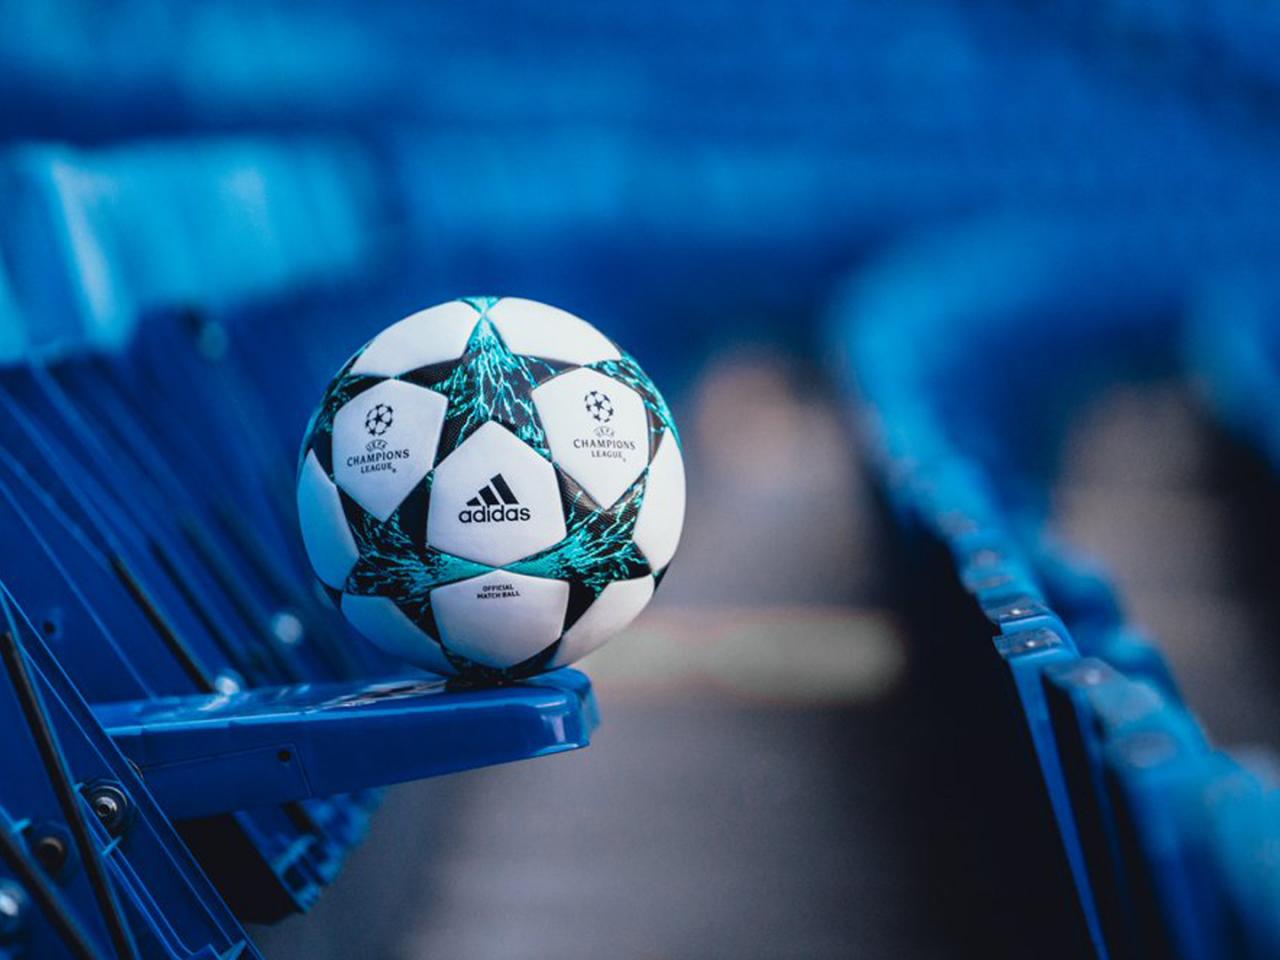 uefa champions league fond d'écran hd,bleu,l'eau,la photographie,ballon de football,sourire